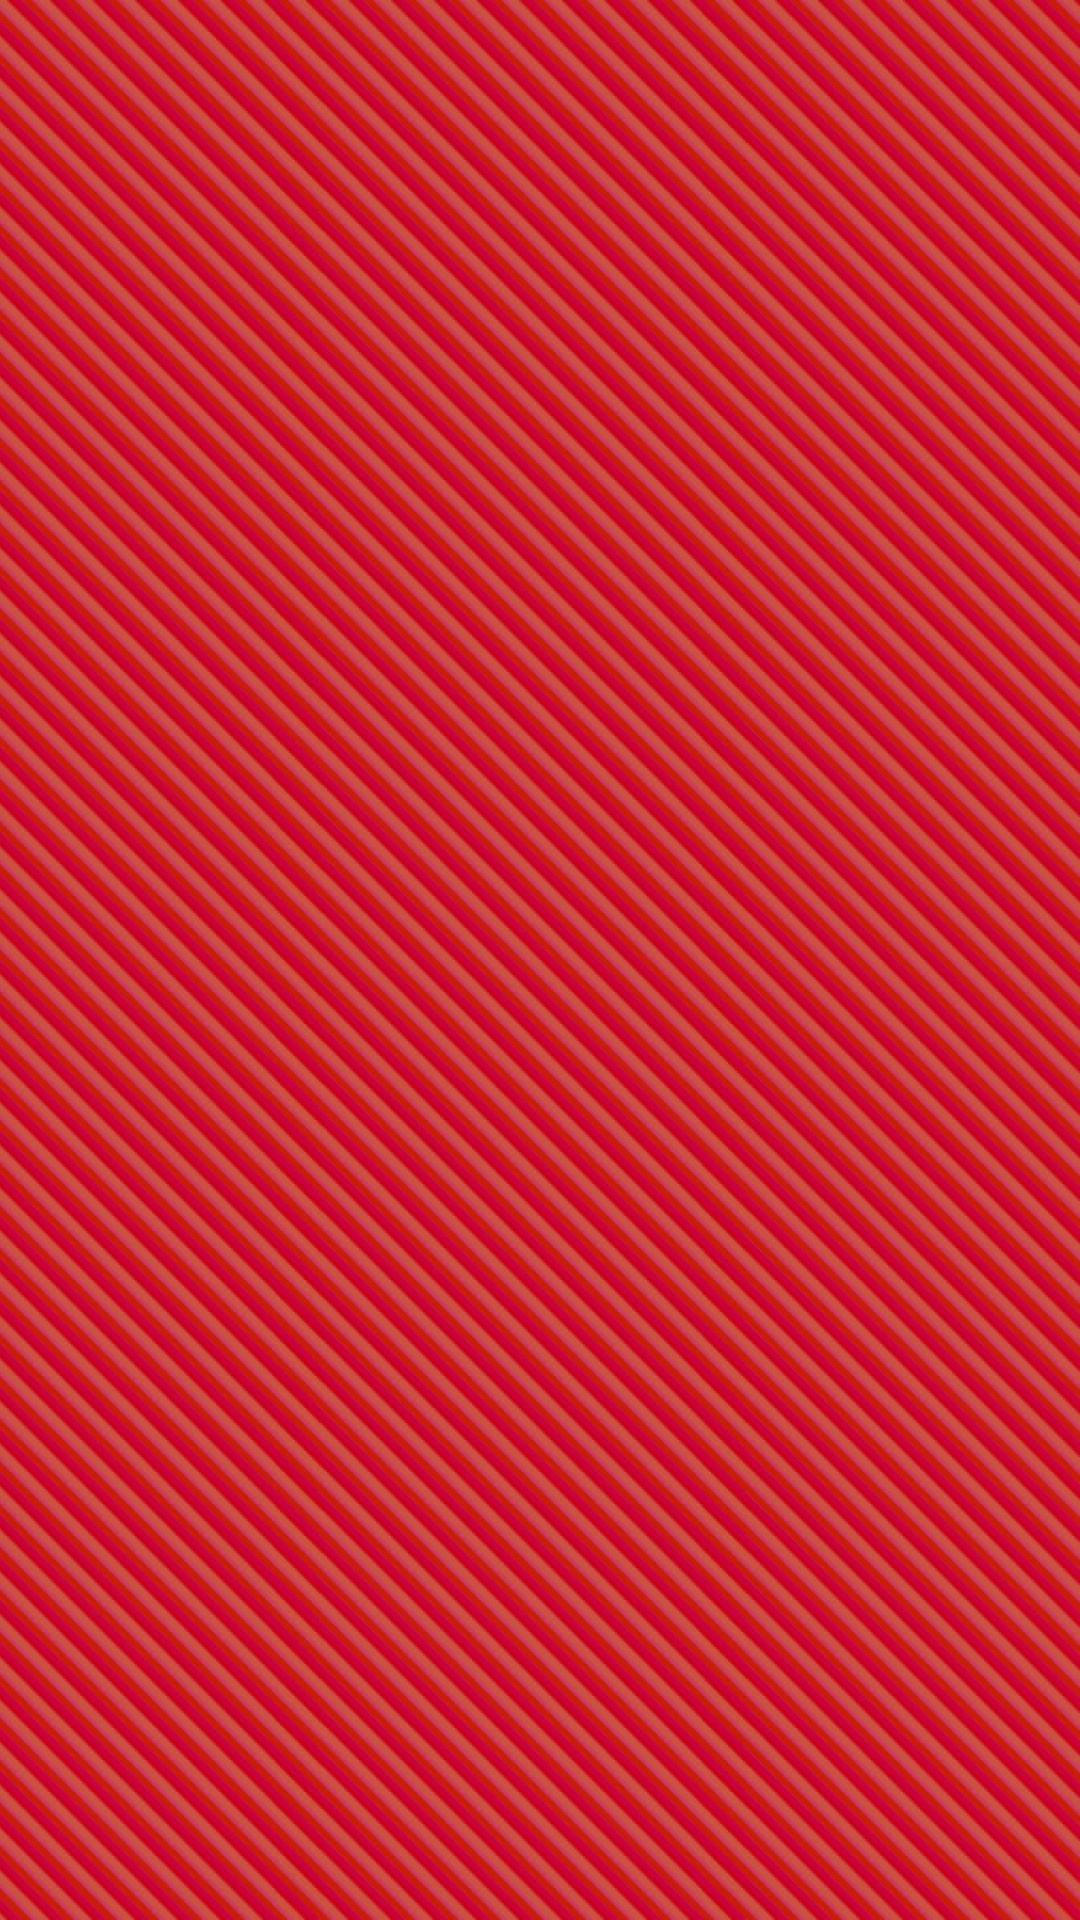 Textil de Rayas Rojas y Blancas. Wallpaper in 1080x1920 Resolution